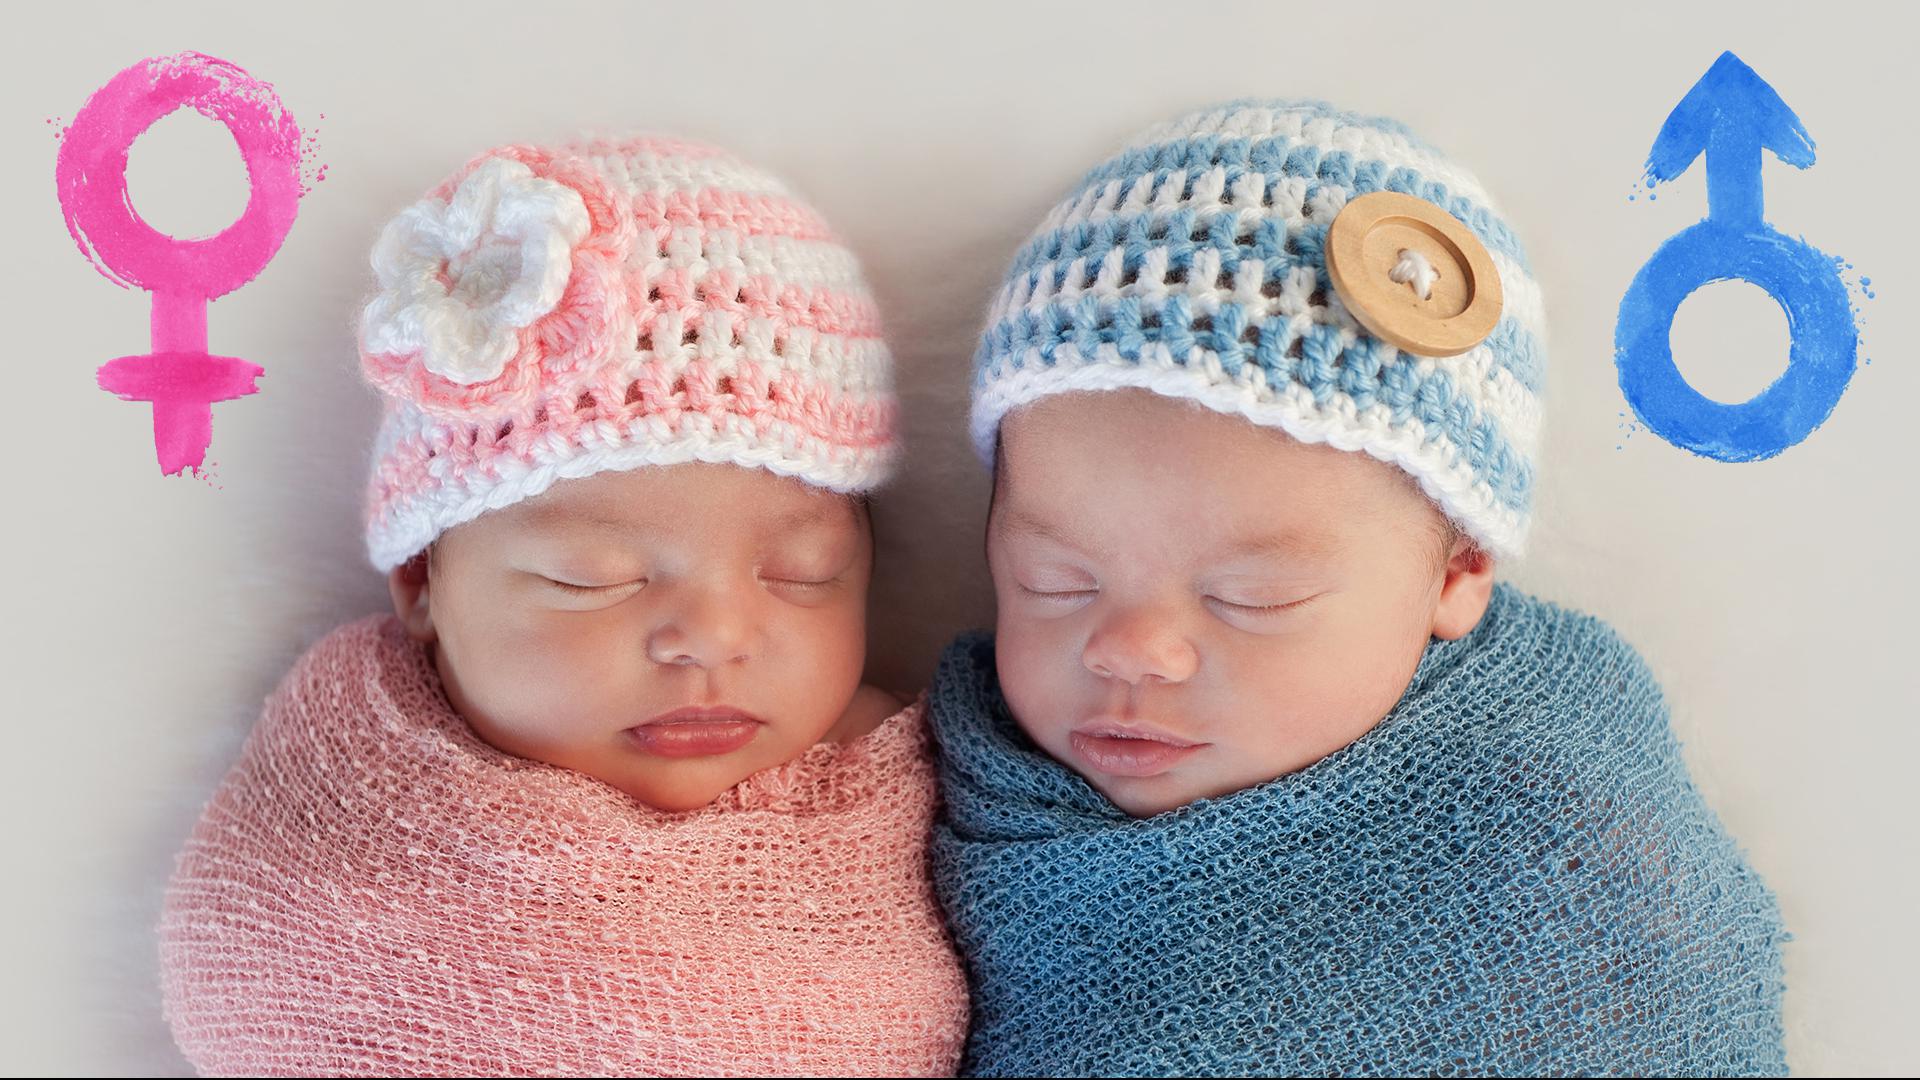 Zwei Babys liegen nebeneinander, das linke trägt rosa Kleidung, das rechte blaue.